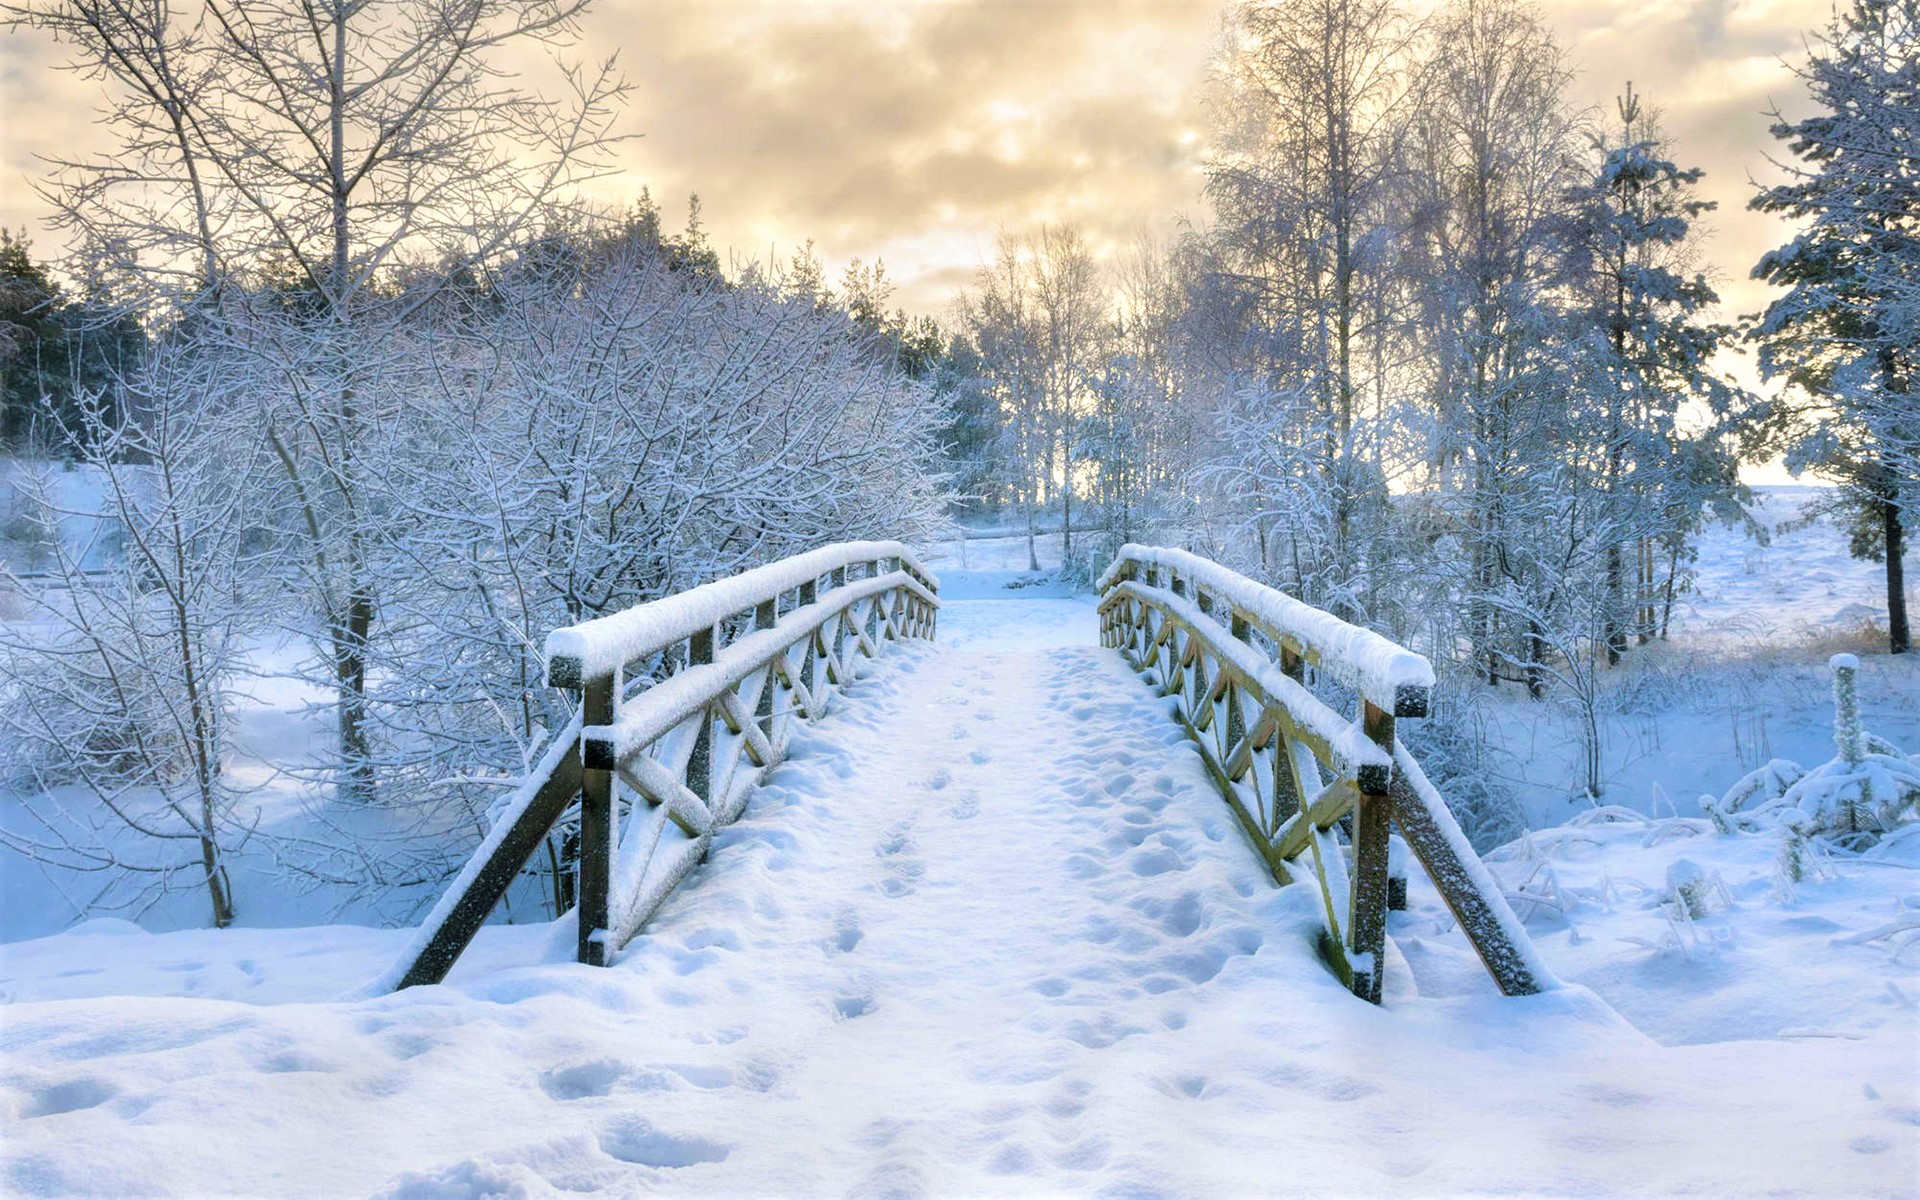 Скачать обои бесплатно Зима, Снег, Парк, Мост, Фотографии картинка на рабочий стол ПК